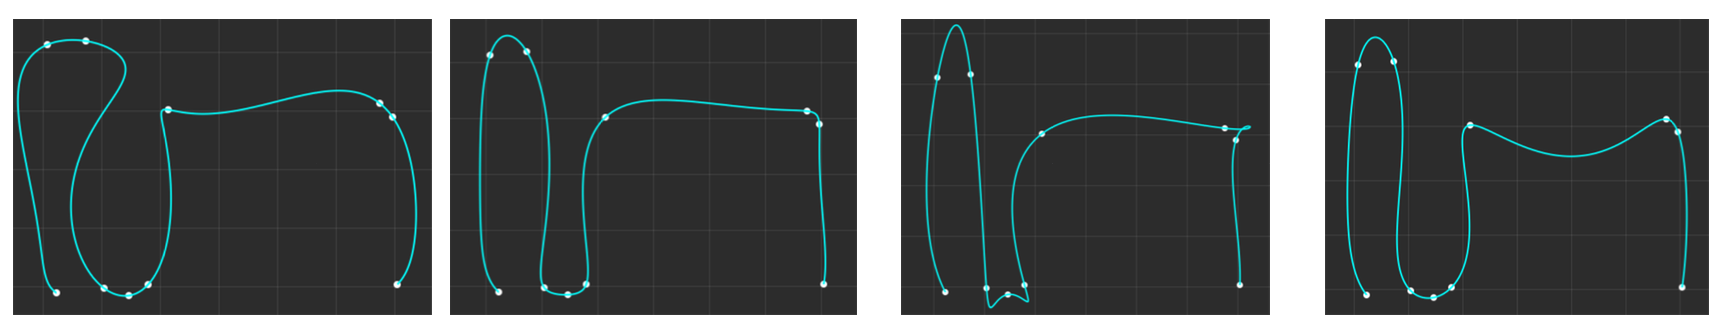 不同参数化对高斯基函数拟合结果的影响。从左到右参数化类型依次为弦长参数化、中心参数化、均匀参数化和Foley-Nielsen参数化